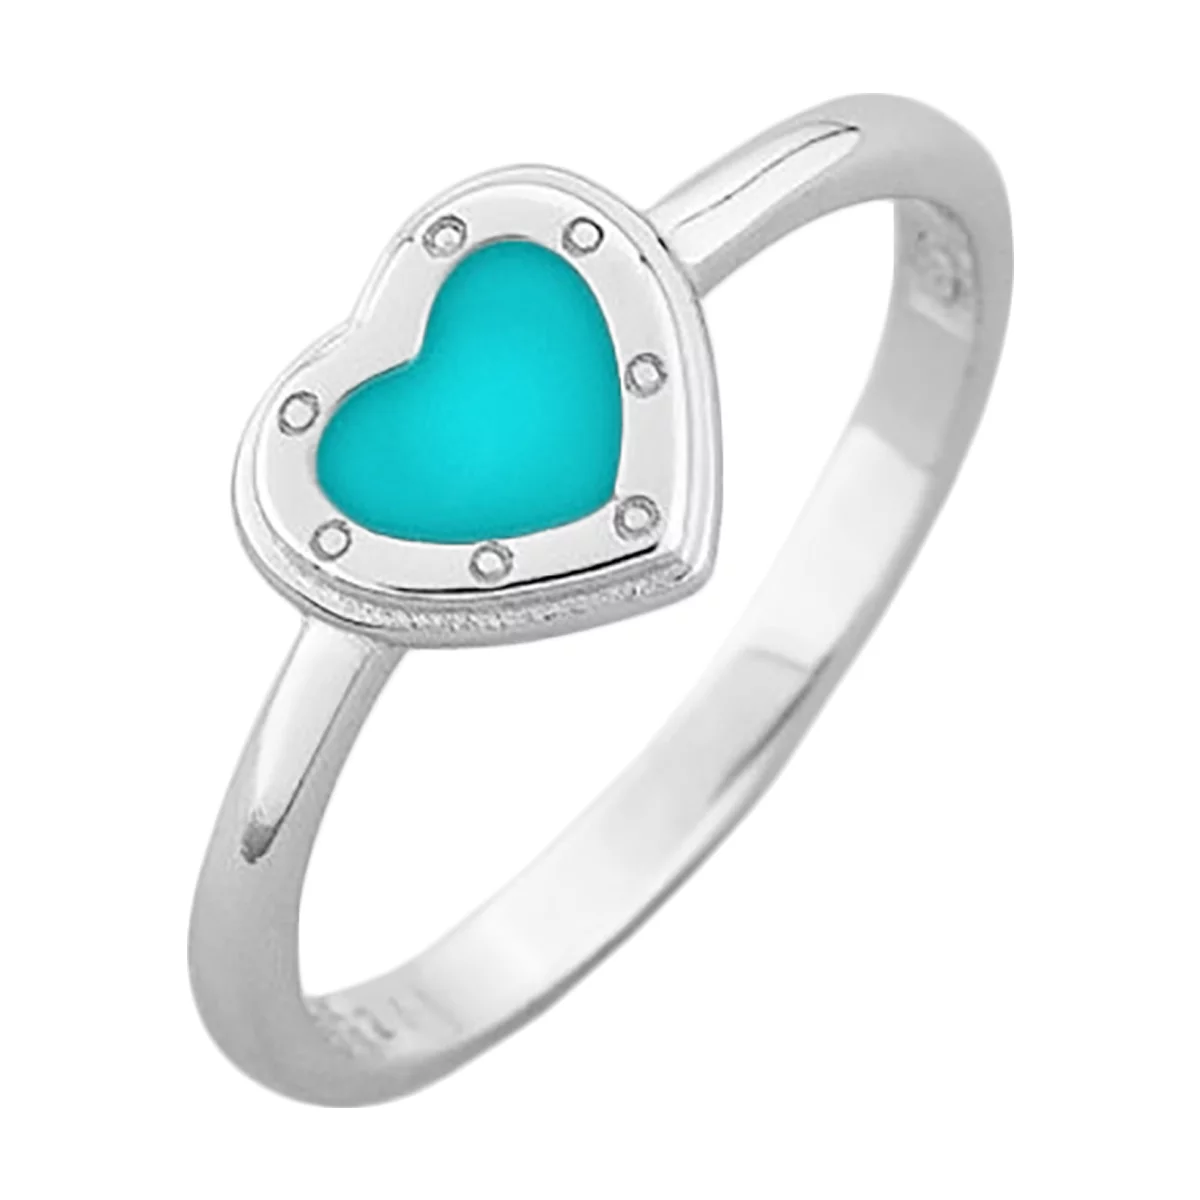 Кольцо серебряное с эмалью Сердце. Артикул 510409з: цена, отзывы, фото – купить в интернет-магазине AURUM